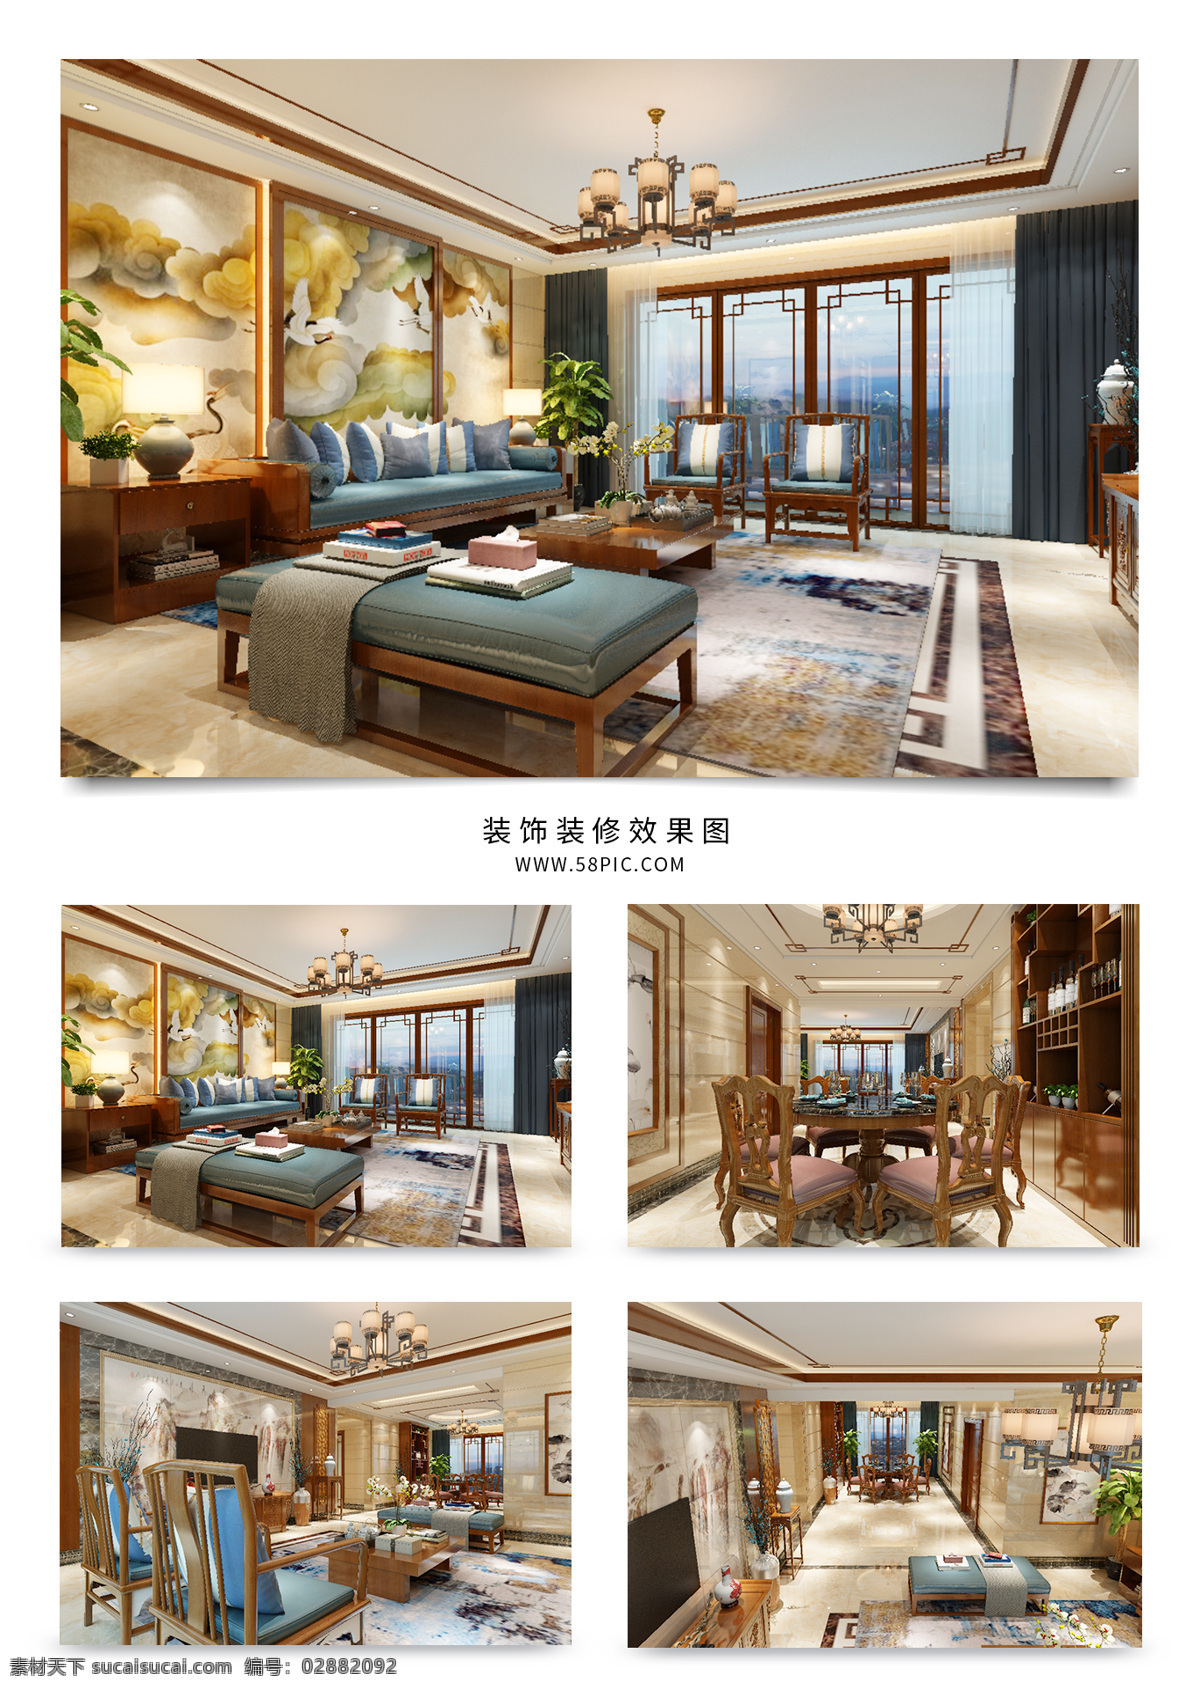 新 中式 风格 奢华 客 餐厅 效果图 时尚 沙发 客厅 新中式 地毯 挂画 壁画 吊顶